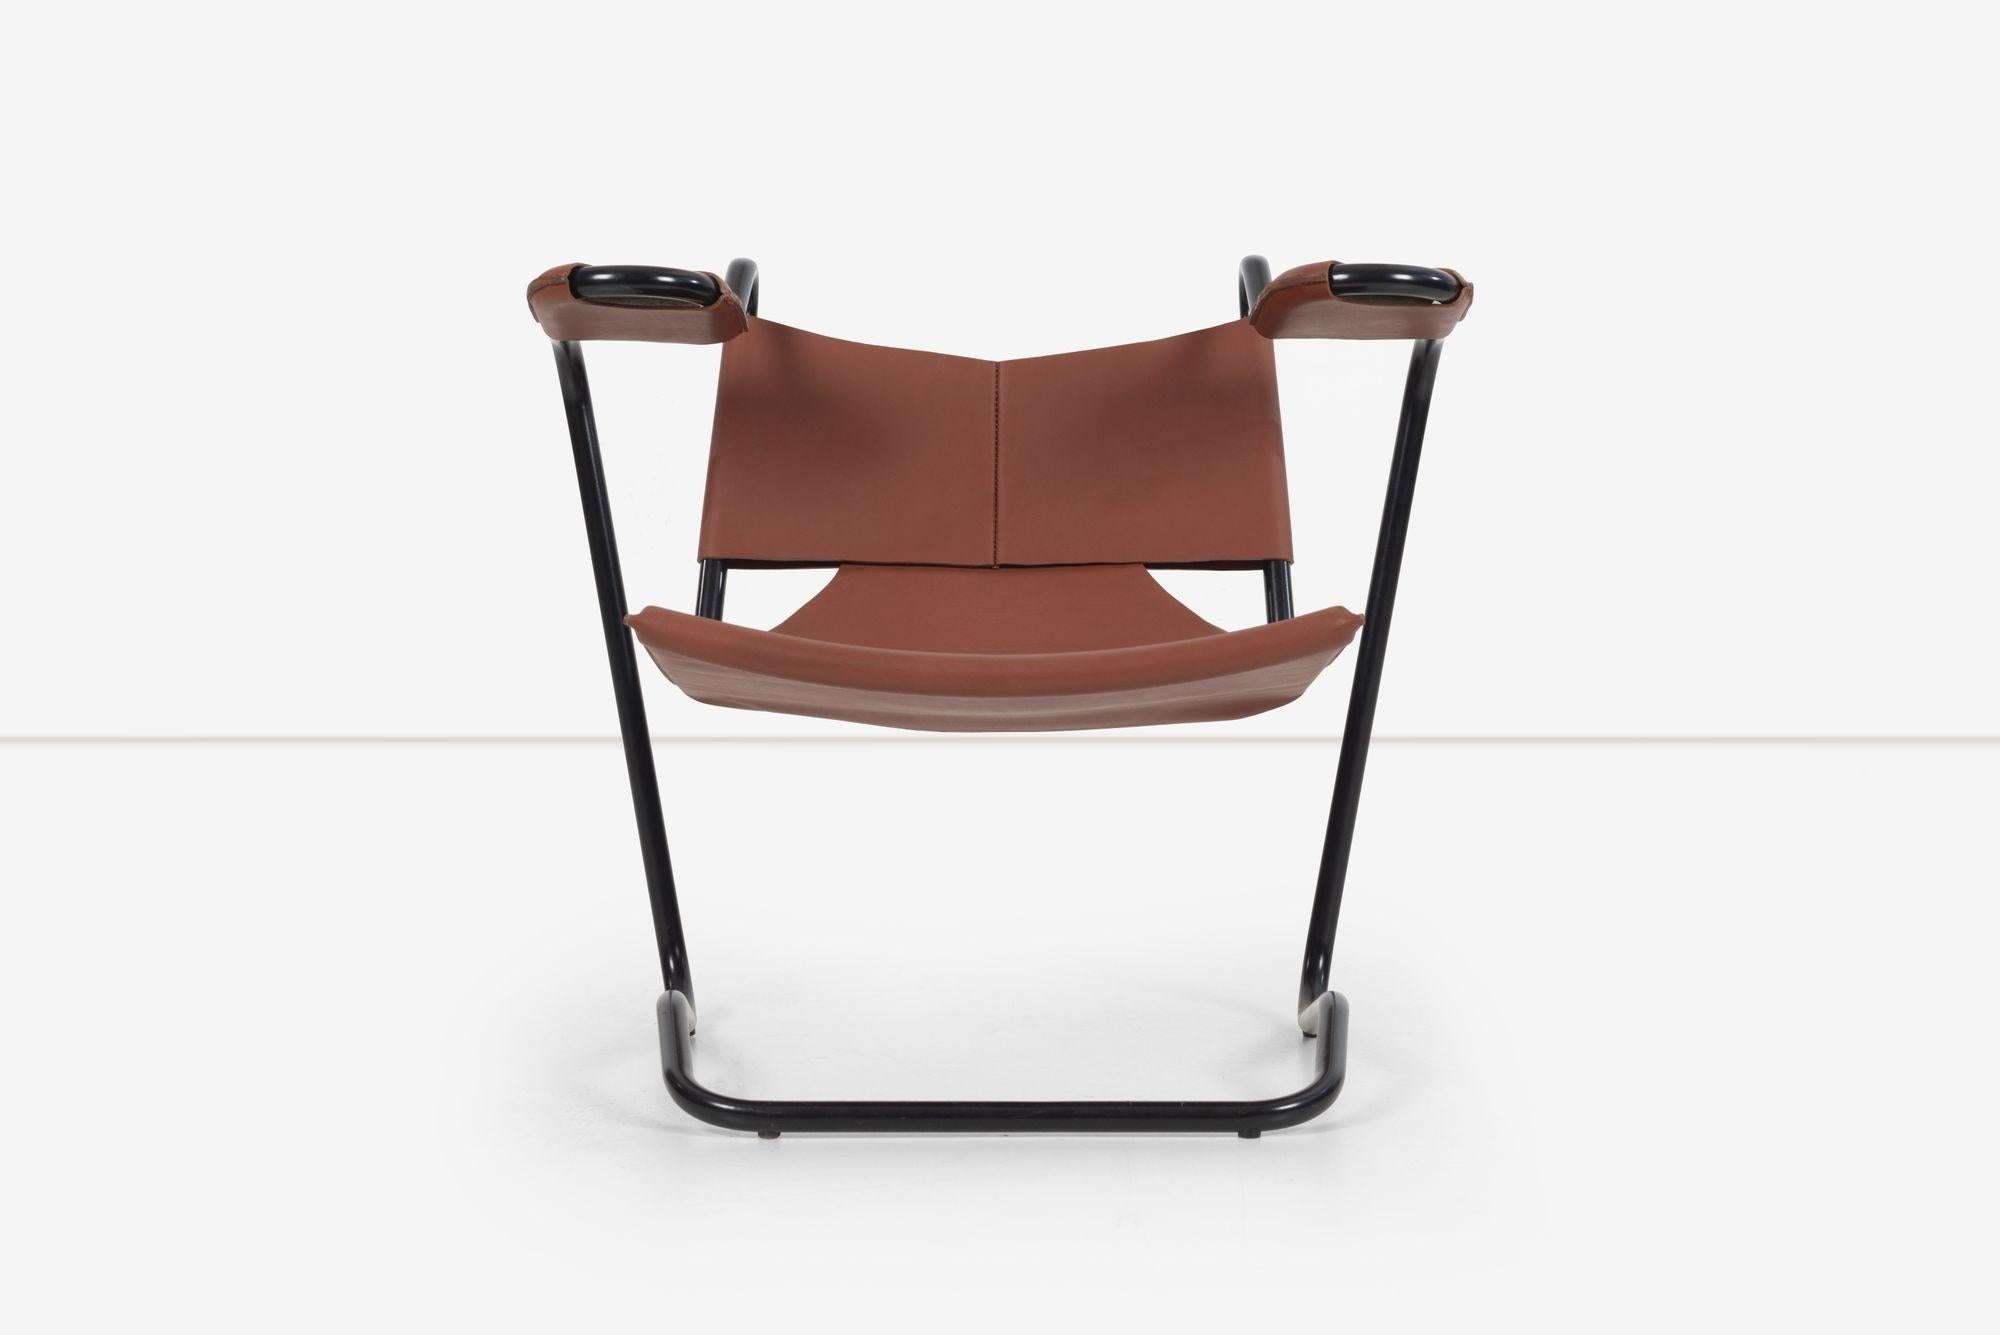 Dan Johnson Leather Sling Chair, Stahlrohr mit Lederbezug, neuere Produktion aus einer seltenen Serie aus den 1950er Jahren, zeitlich exakt limitierte Produktion 2002, Los Angeles California.